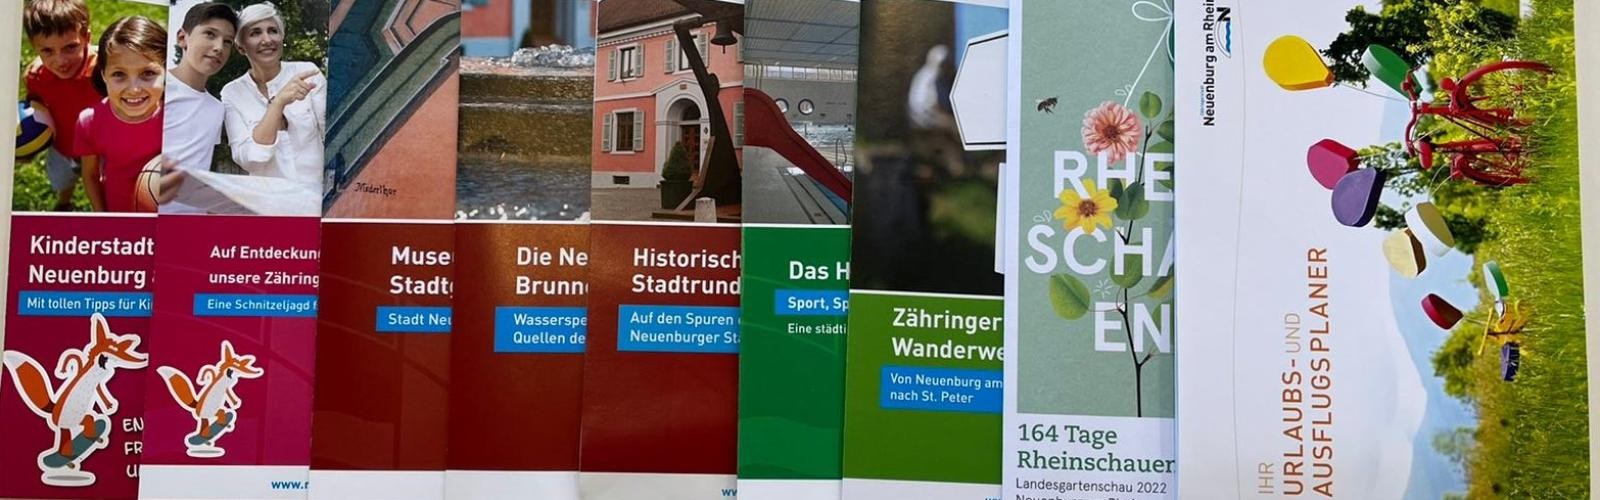 Übersicht verschiedener bunter Broschüren der Stadt Neuenburg am Rhein